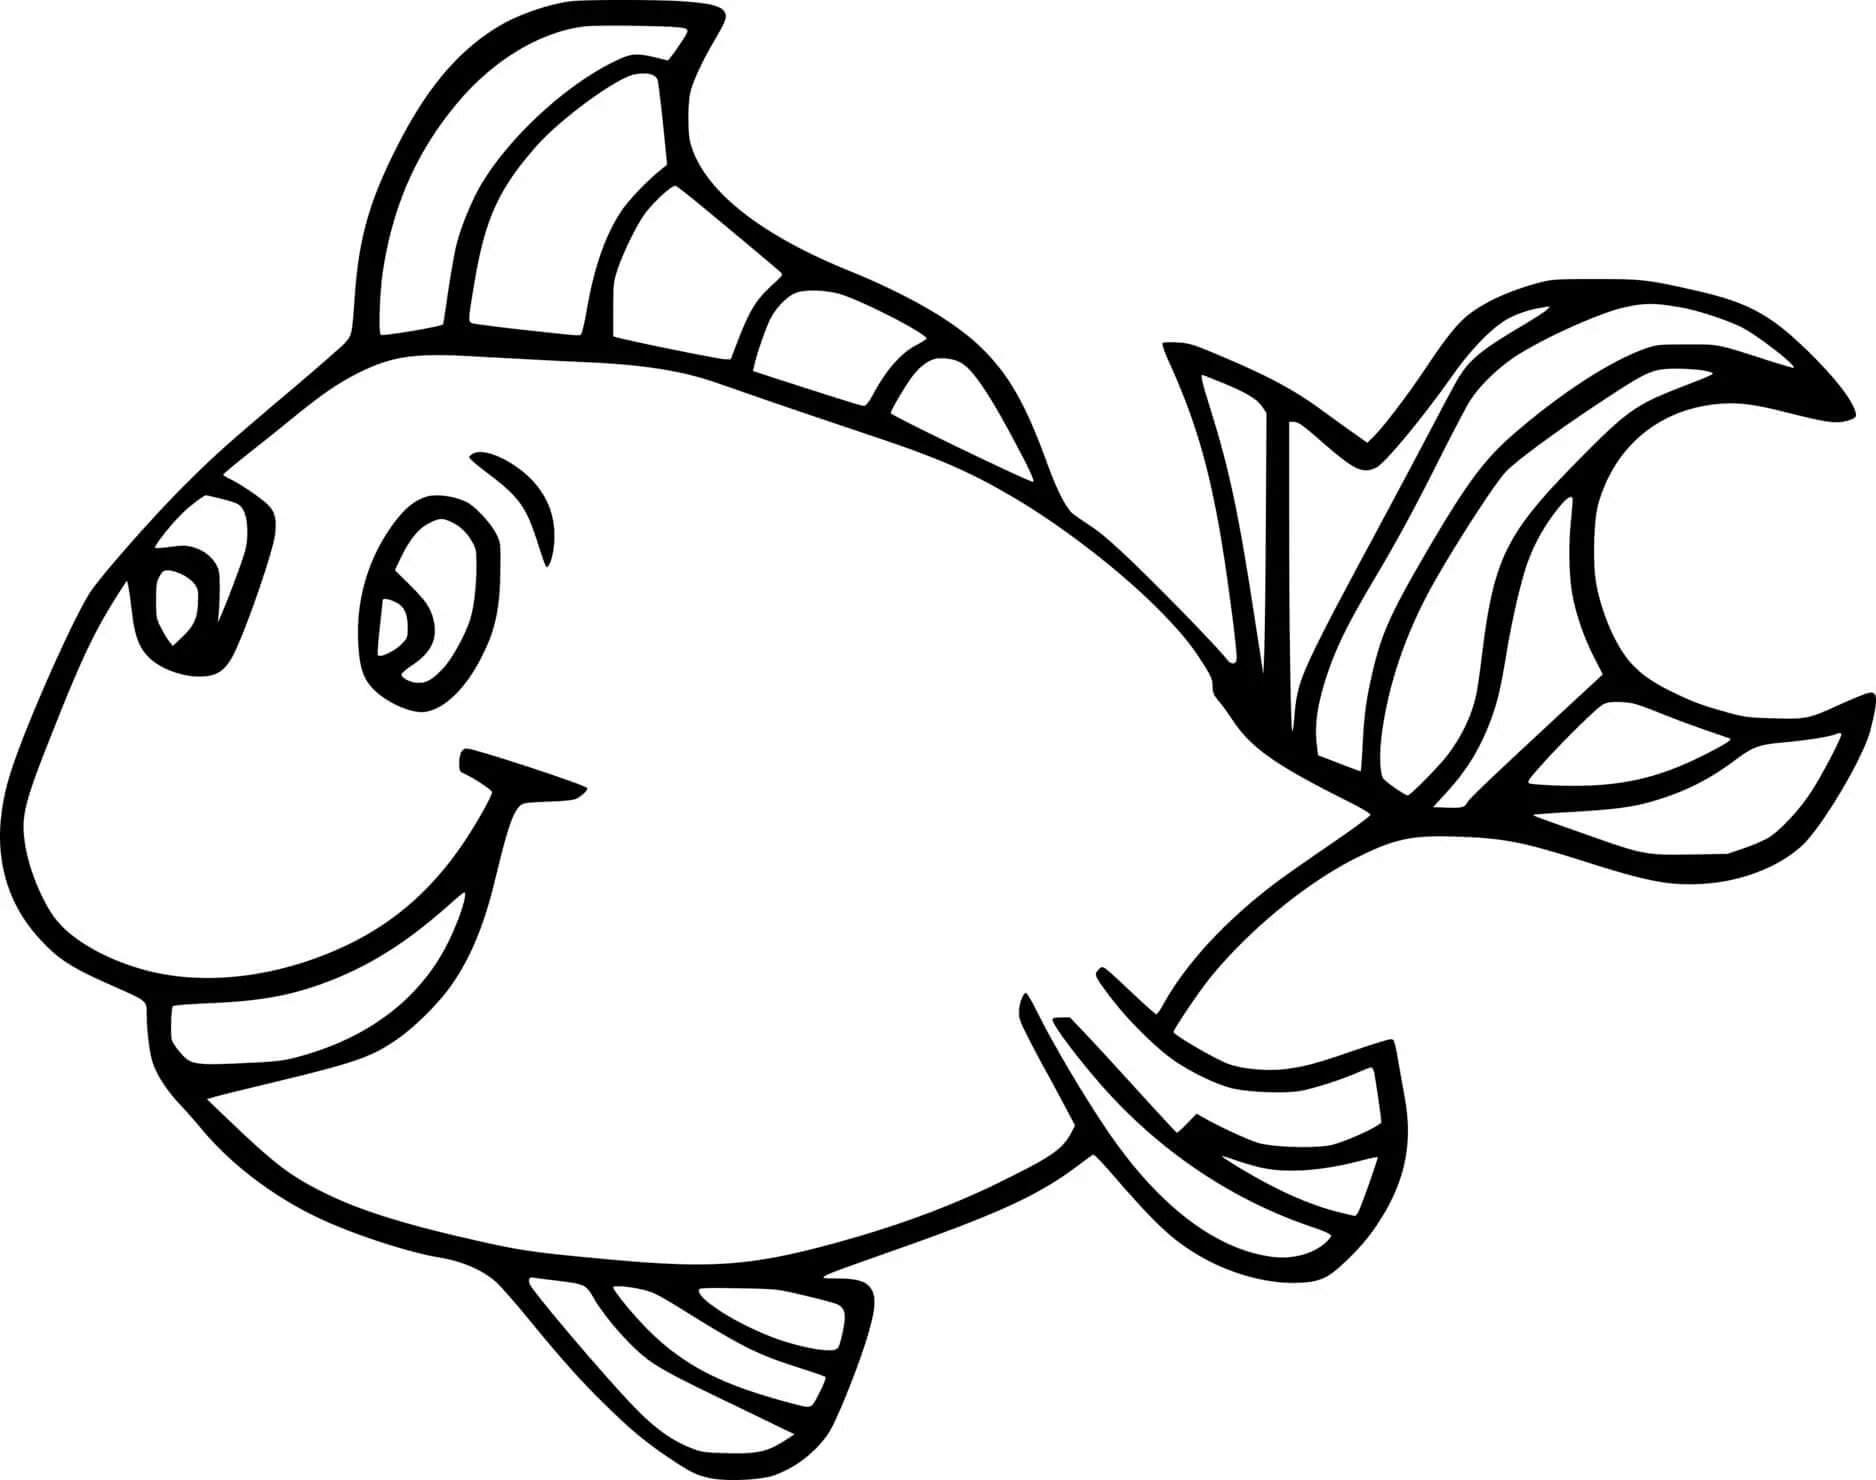 Раскраска рыбки для детей 5 6 лет. Раскраска рыбка. Рыба раскраска для детей. Рыбка раскраска для детей. Рыбка для раскрашивания для детей.